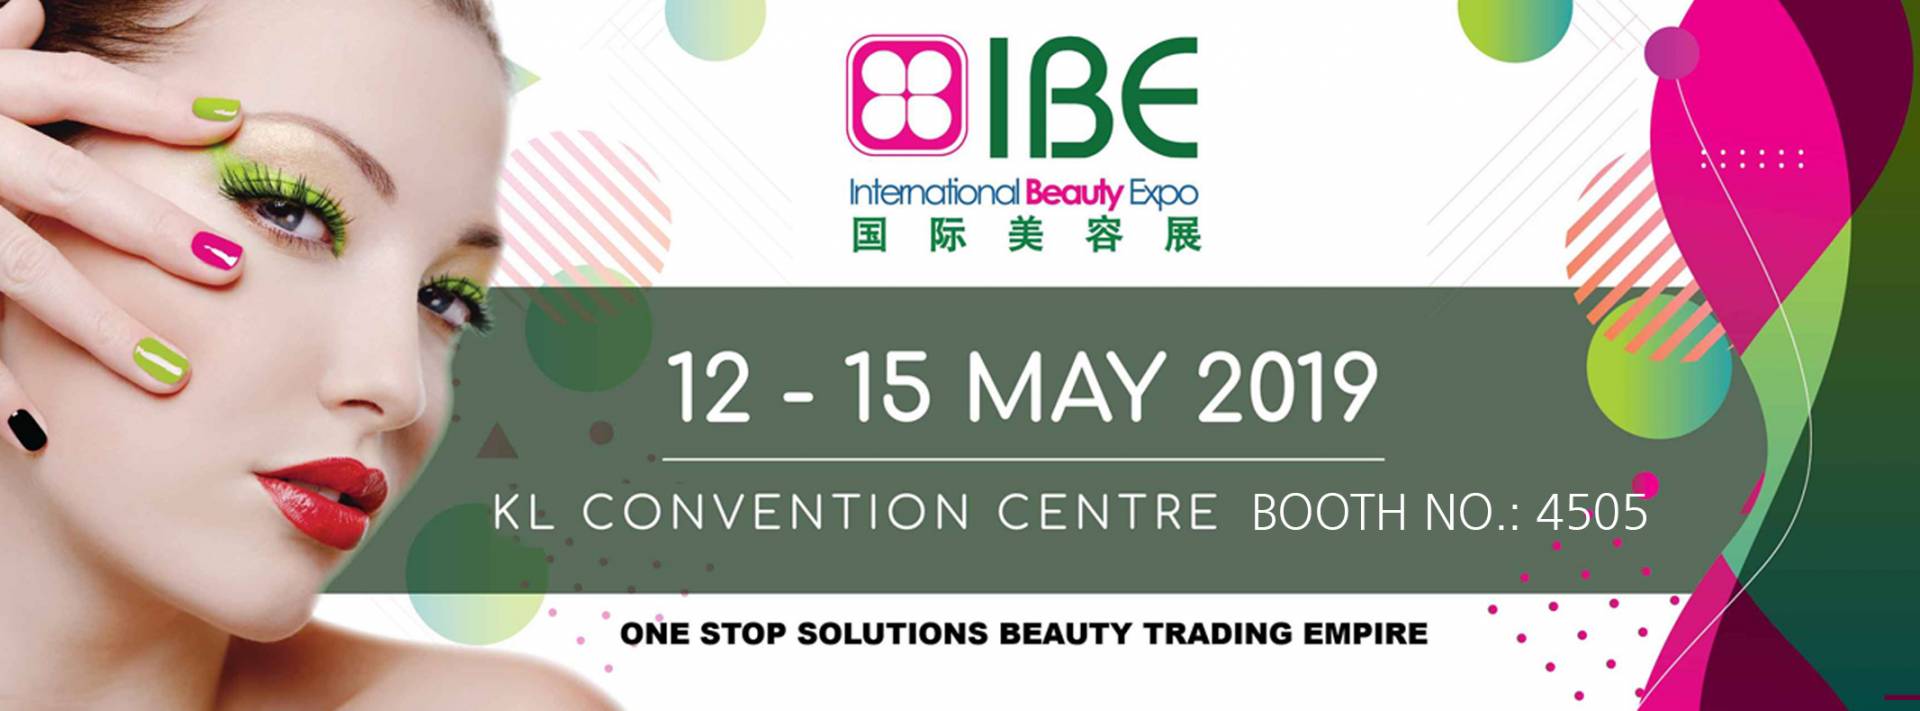 International Beauty Expo Malaysia 2019